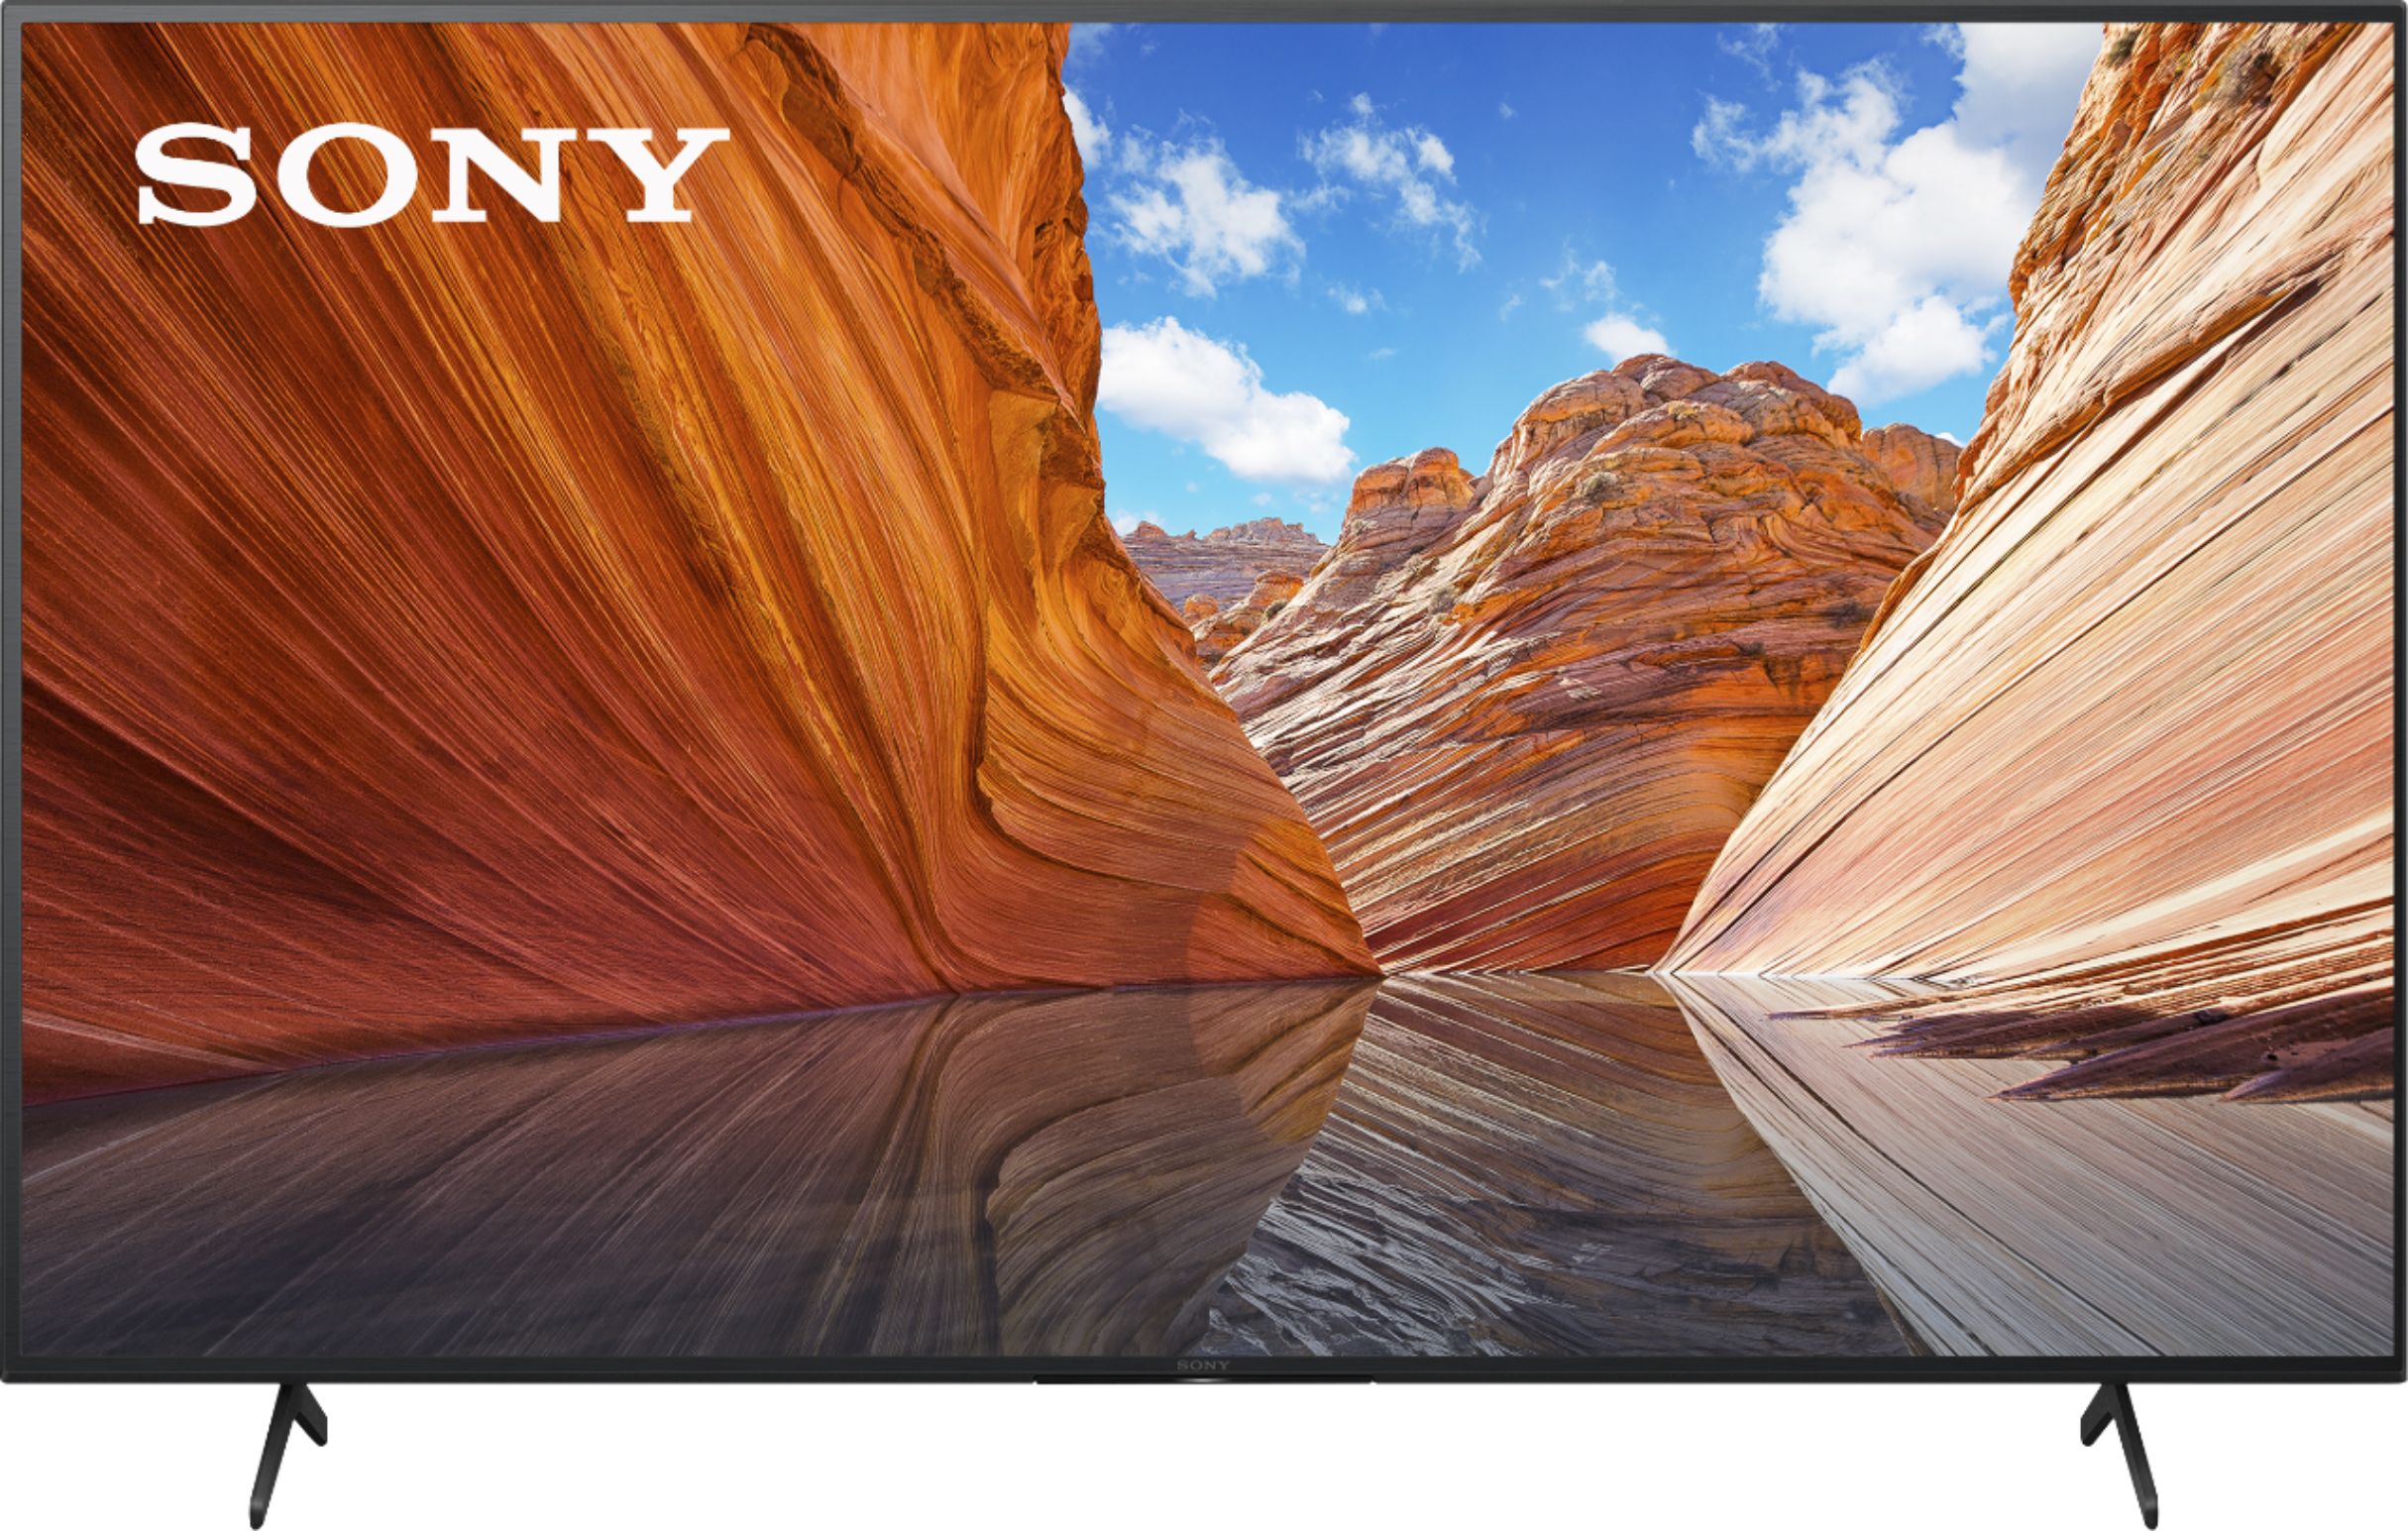 ugunstige let noget Sony 65" Class X80J Series LED 4K UHD Smart Google TV cl - Best Buy